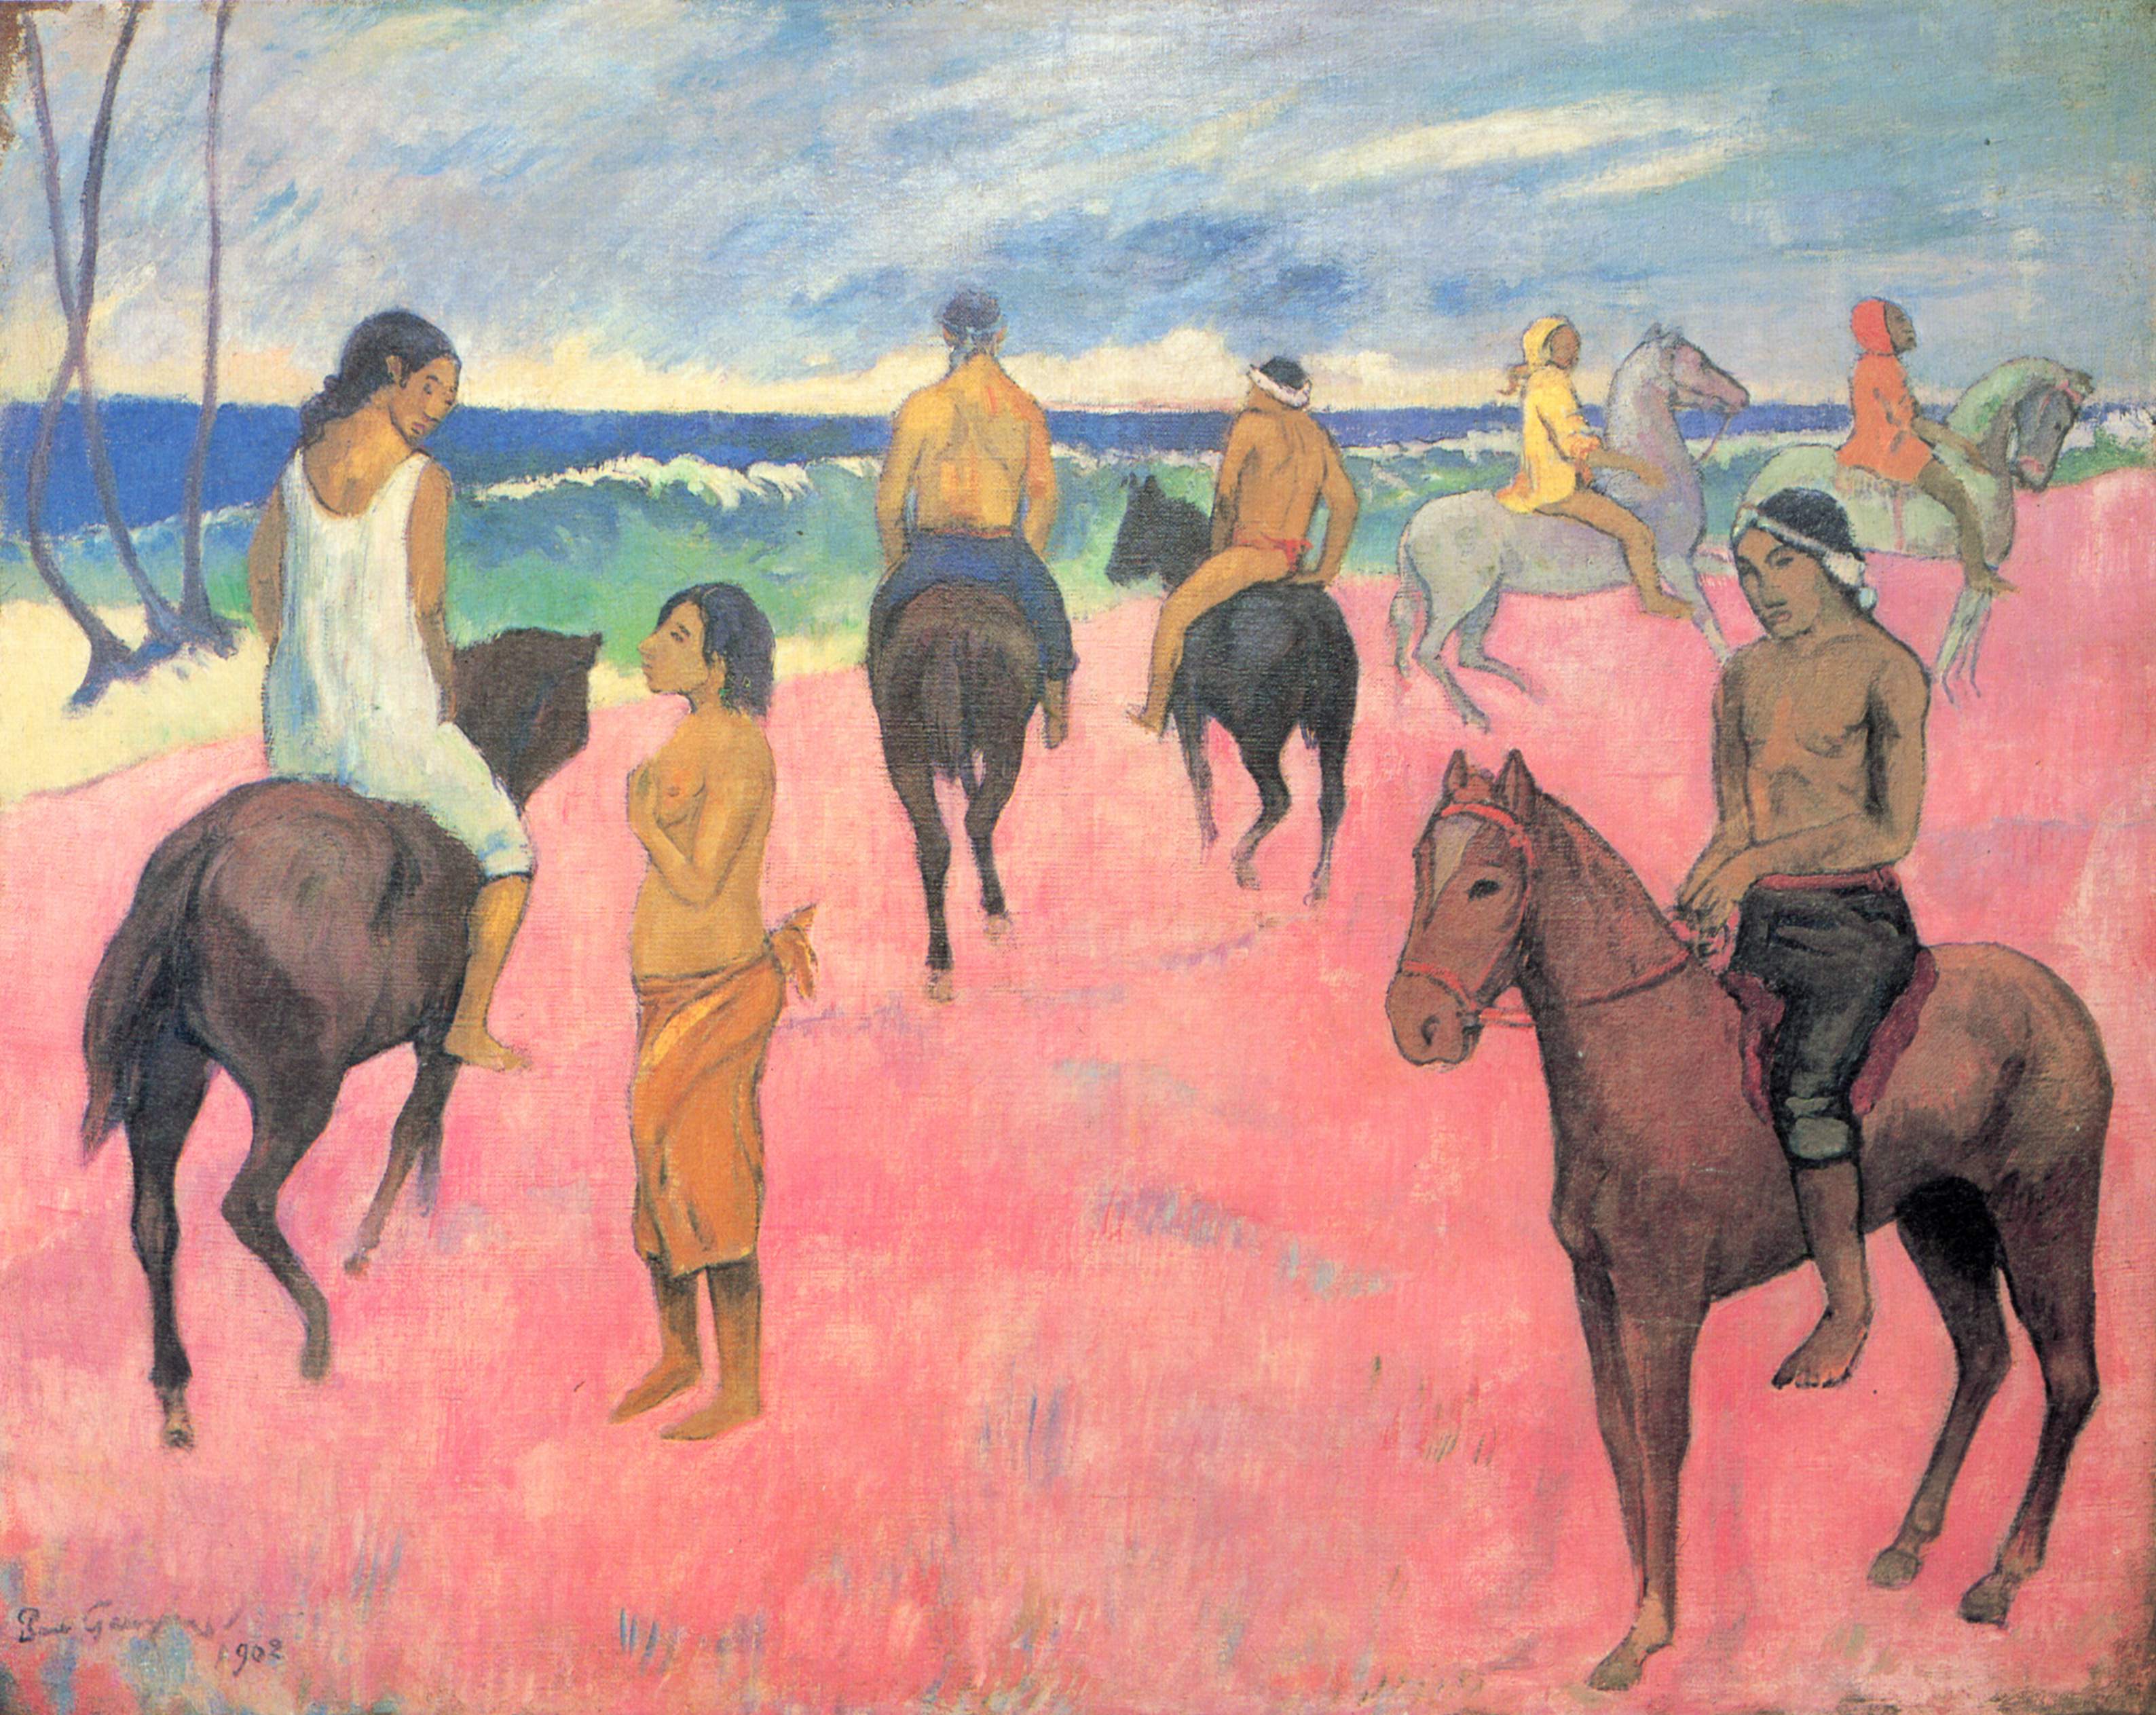 Sahildeki Biniciler by Paul Gauguin - 1902 - 73 × 92 cm özel koleksiyon